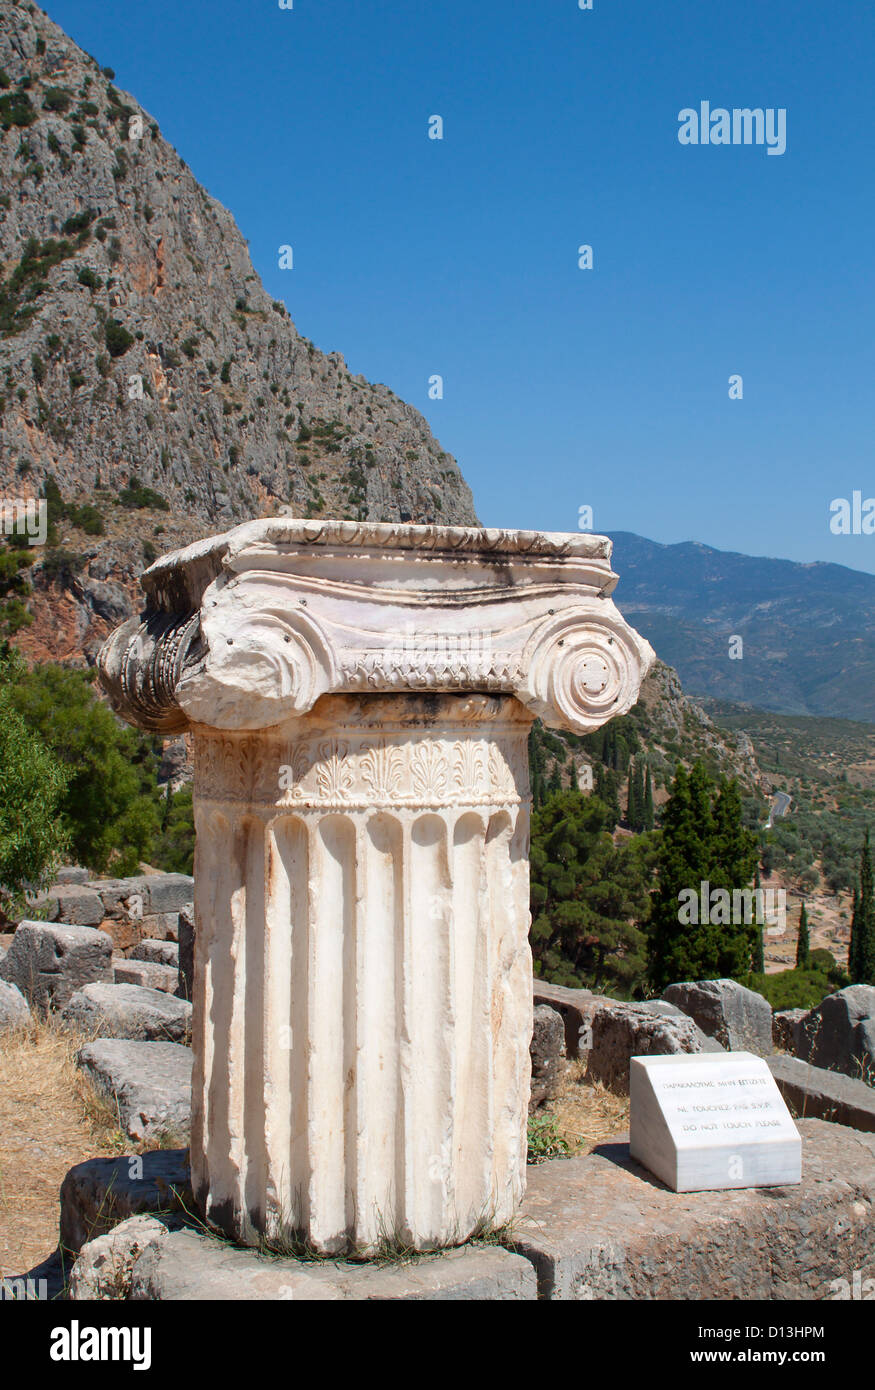 Unico ordine ionico capitale a Delphi sito archeologico in Grecia Foto Stock